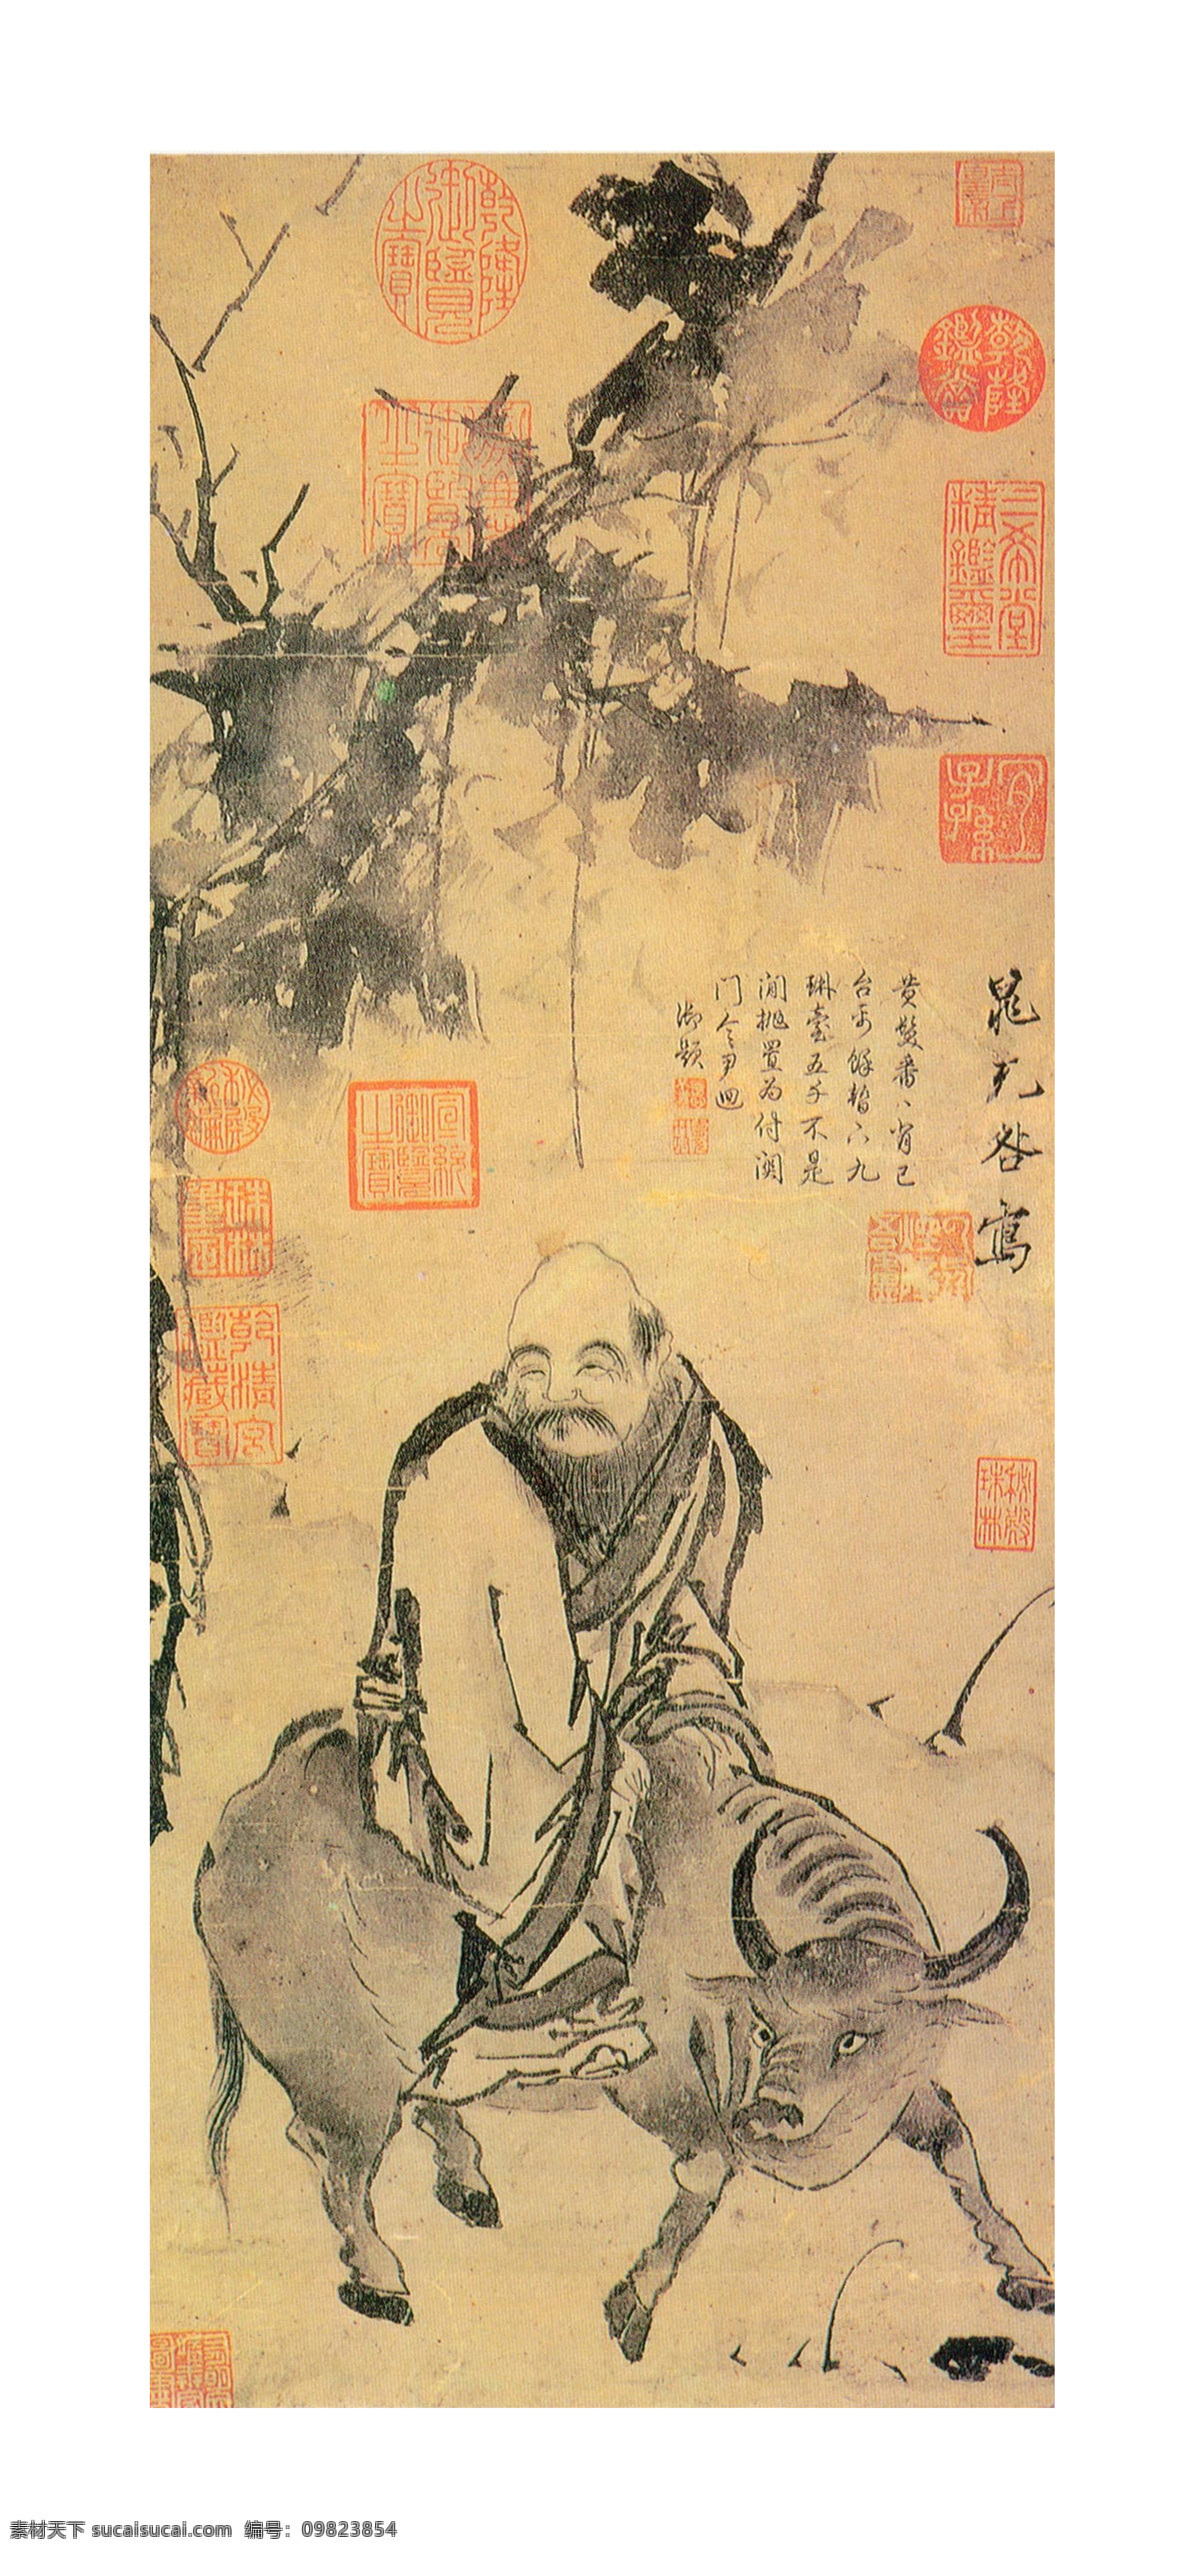 老子骑牛图 老子 牛 晁补之 北京故宫博物院 传世名画 人物 文化艺术 绘画书法 设计图库